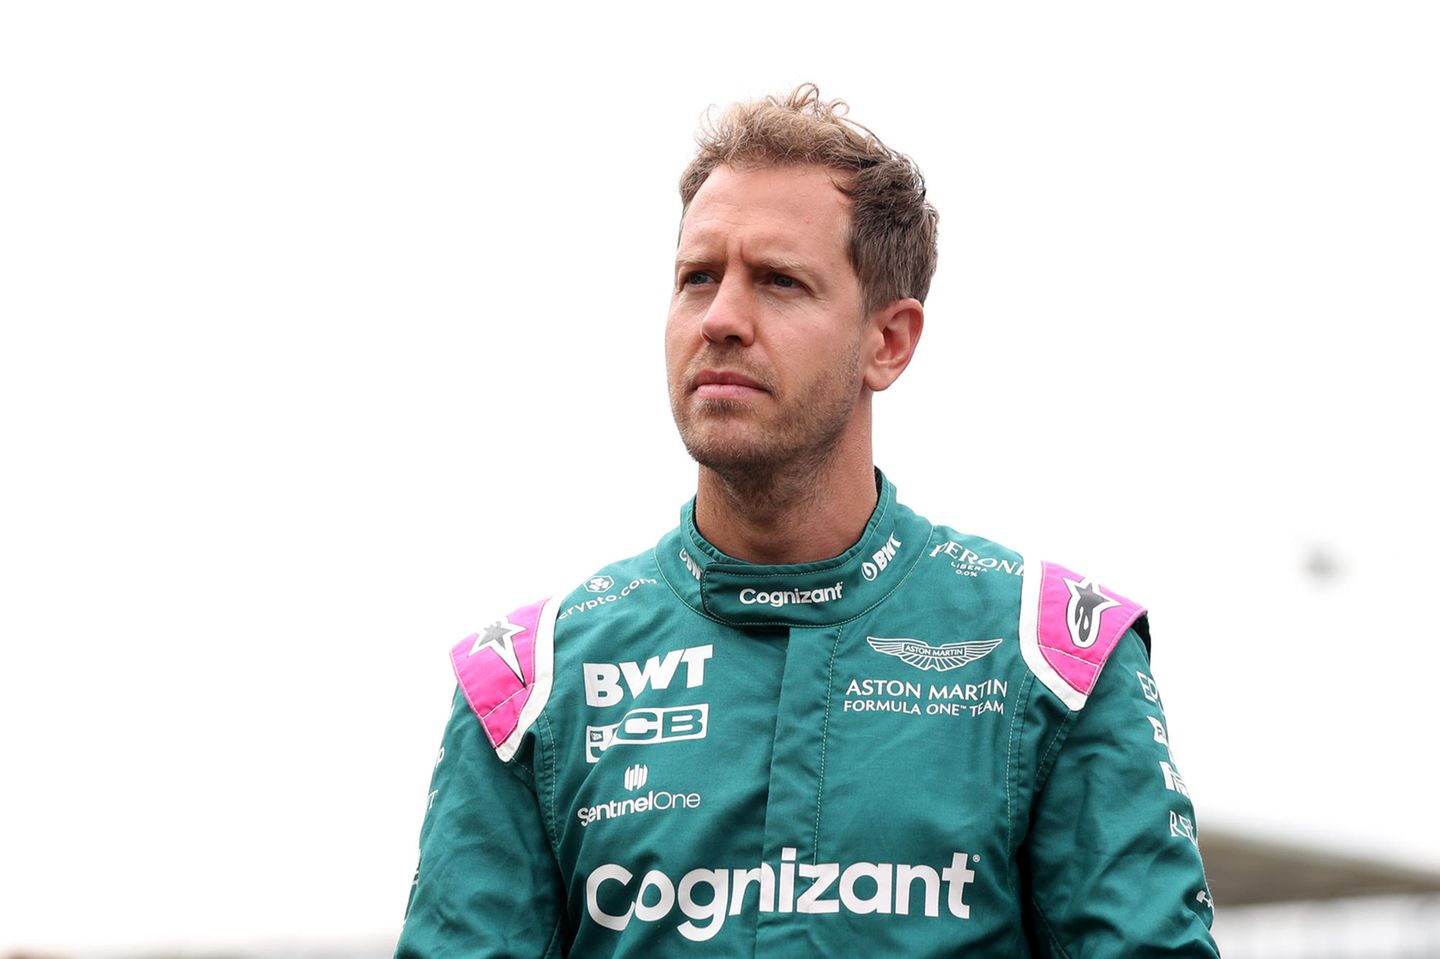 Zeigt sich "enttäuscht" darüber, dass das Tempolimit vorerst nicht kommt: Rennfahrer Sebastian Vettel